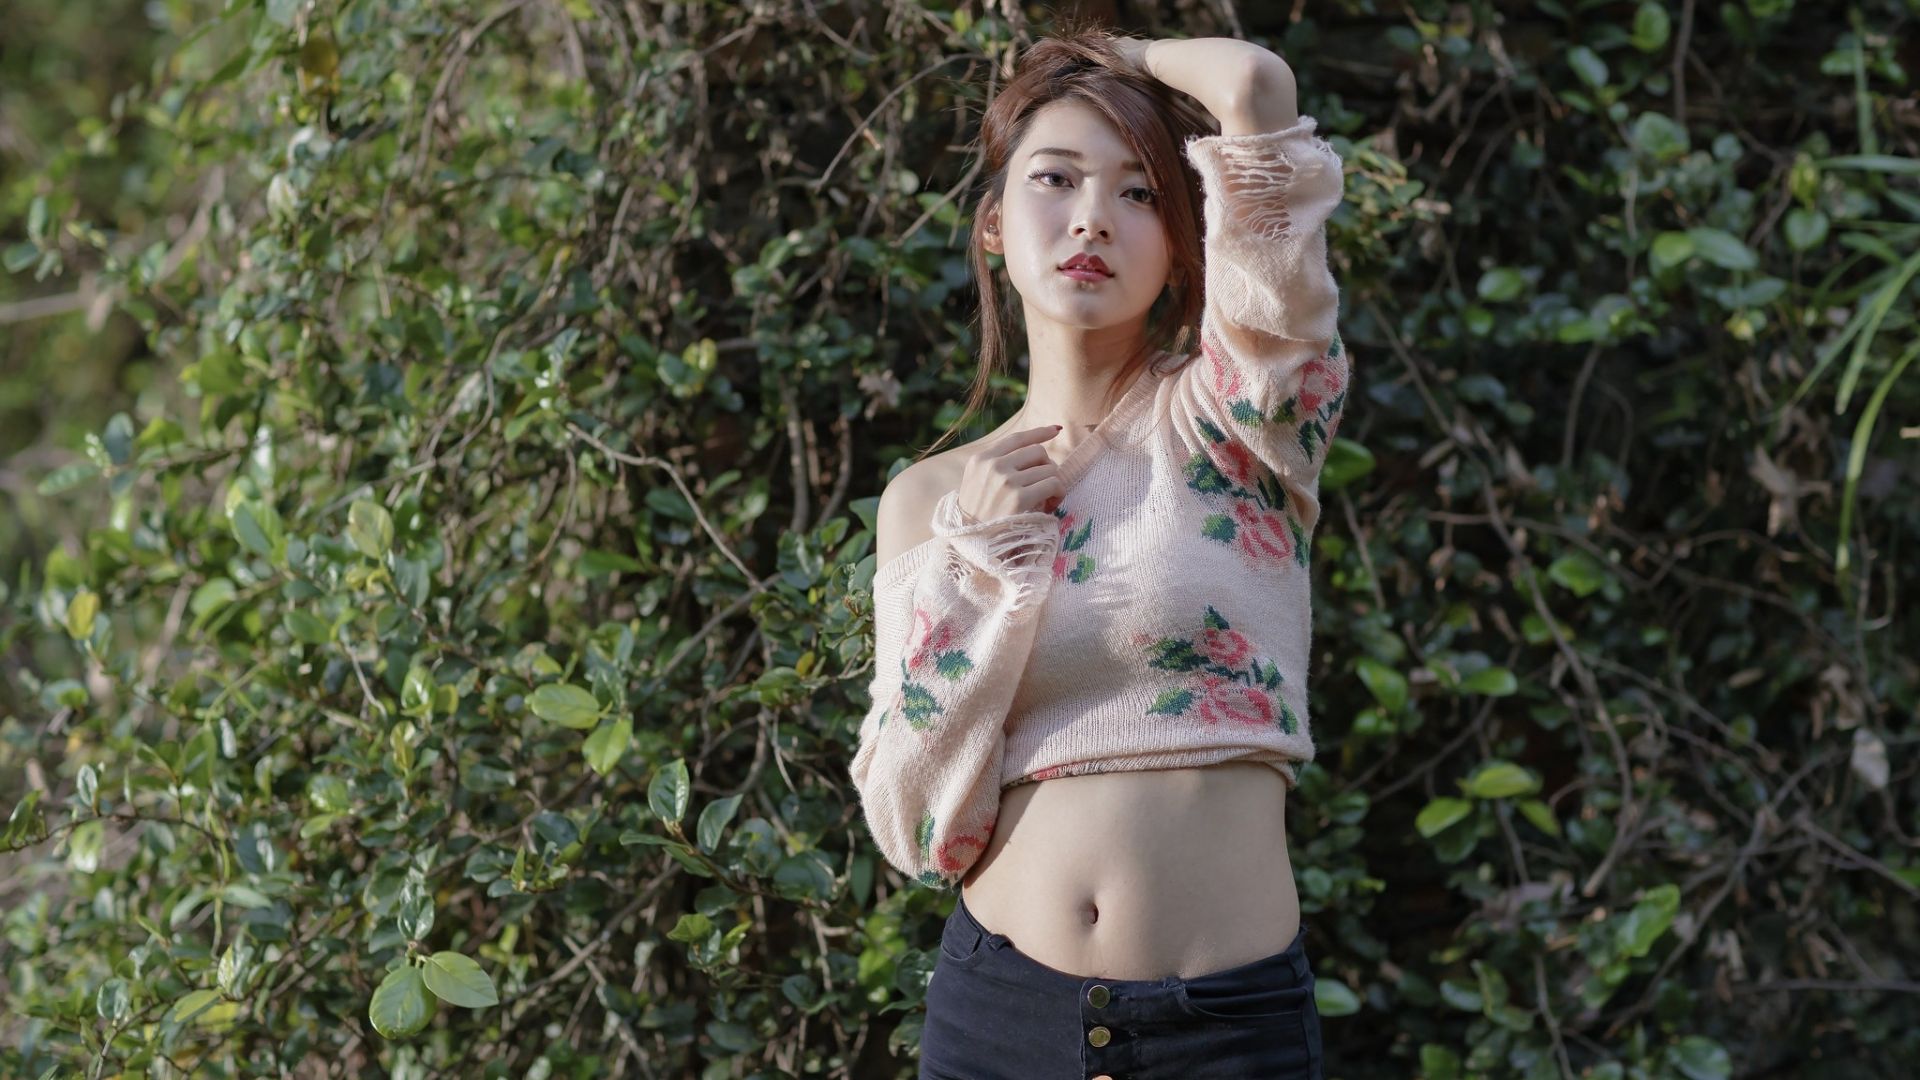 Wallpaper Asian model in garden, girl